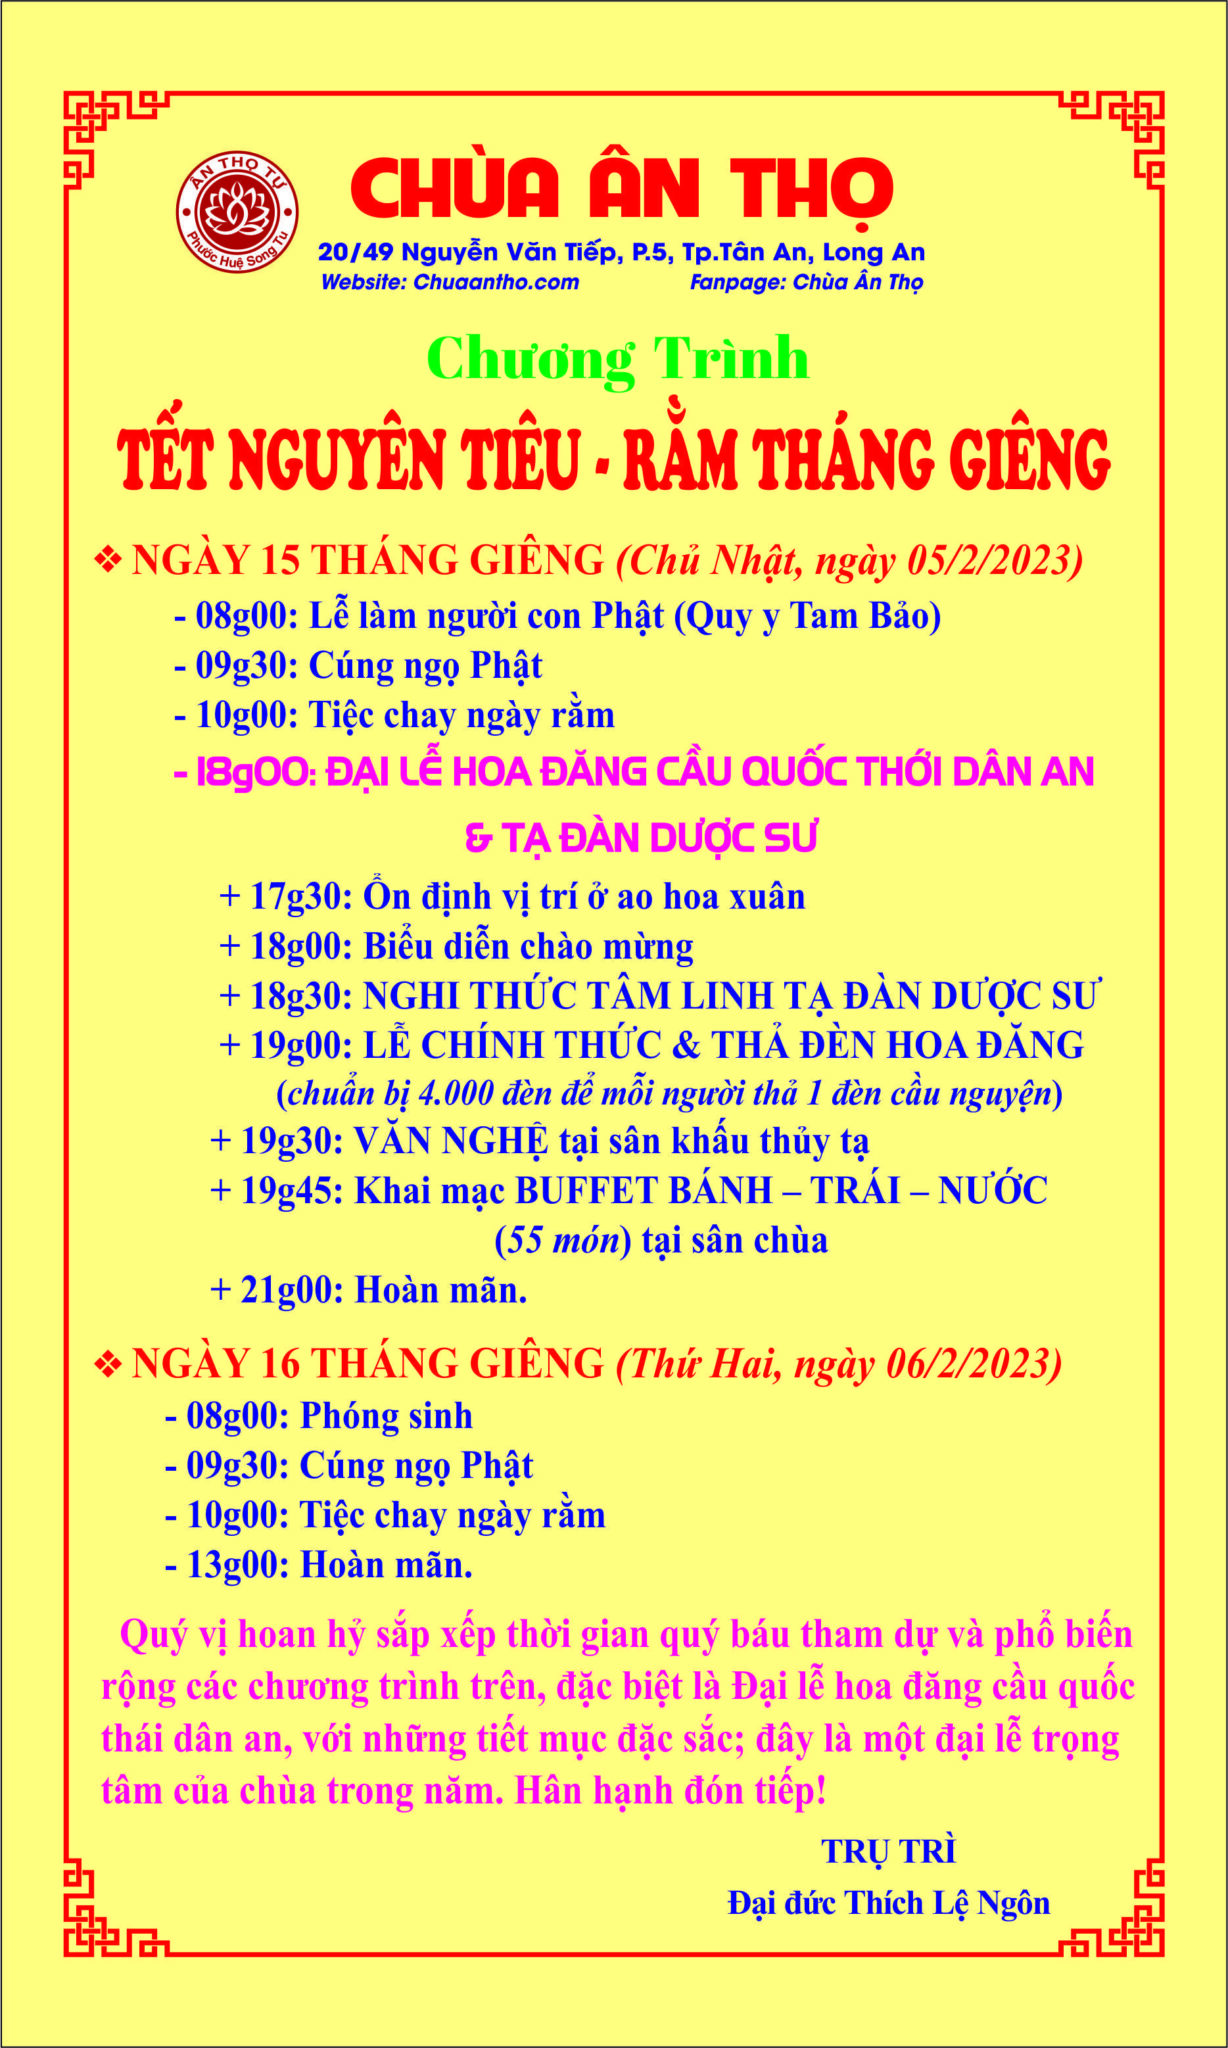 Chuong-trinh-Tet-Nguyen-tieu-1-1228x2048